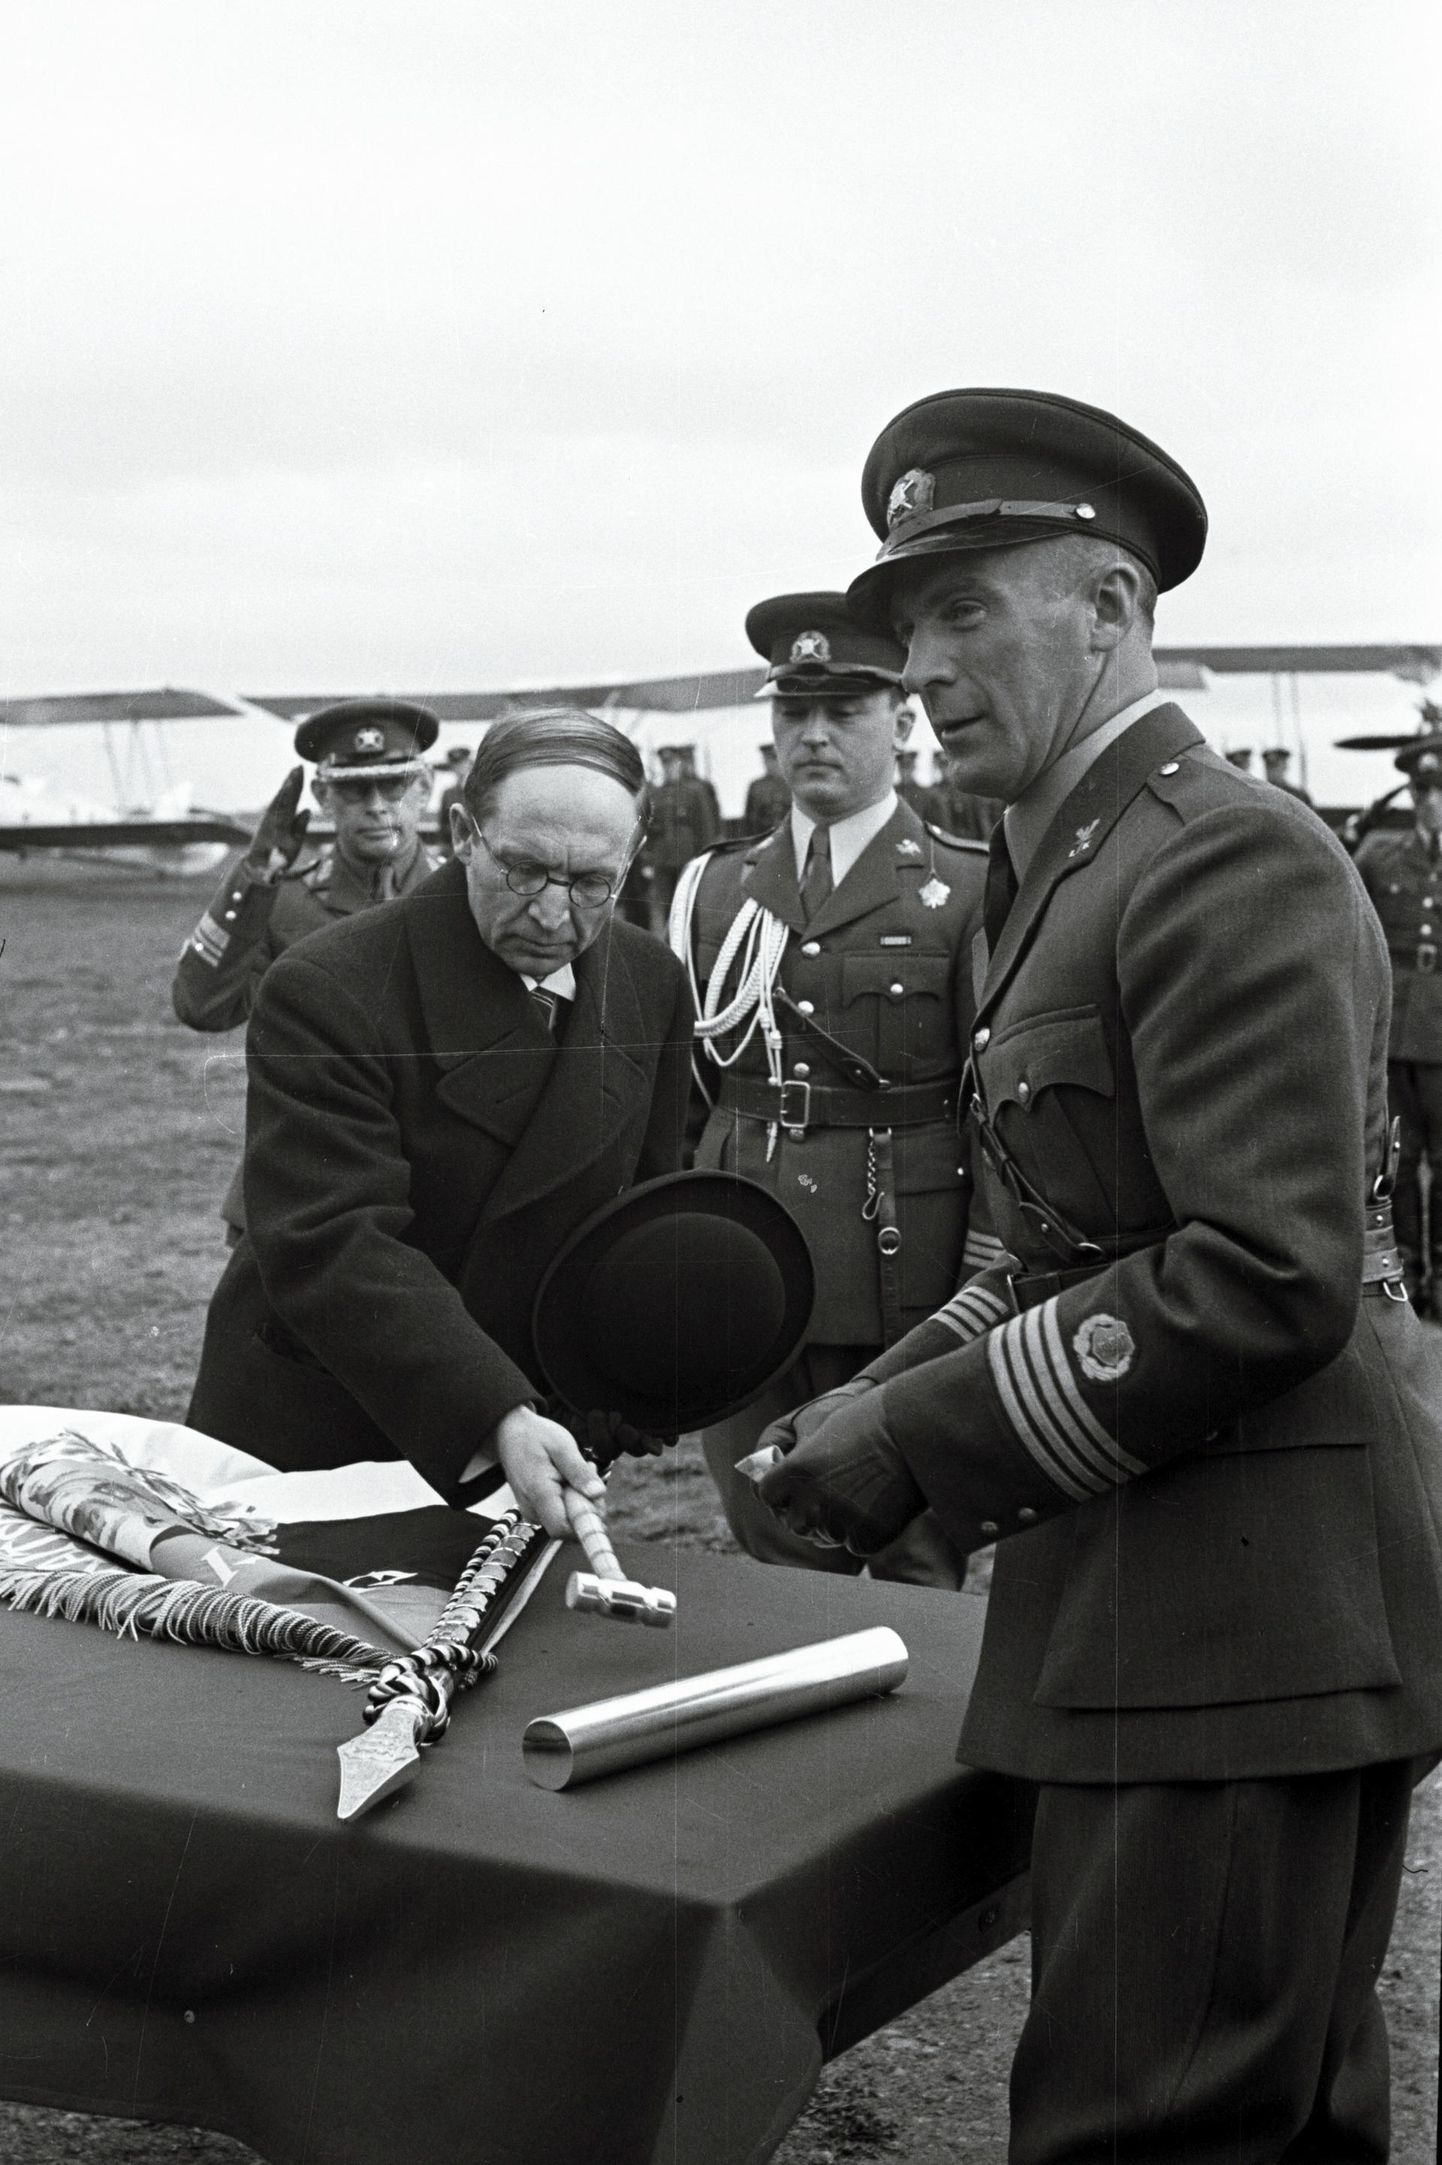 Eesti Ajakirjanike Liit annetas 1. juunil 1940 lipu sõjaväe lennukoolile Lasnamäe lennuväljal, peaminister Jüri Uluots lõi naela lipuvardasse.